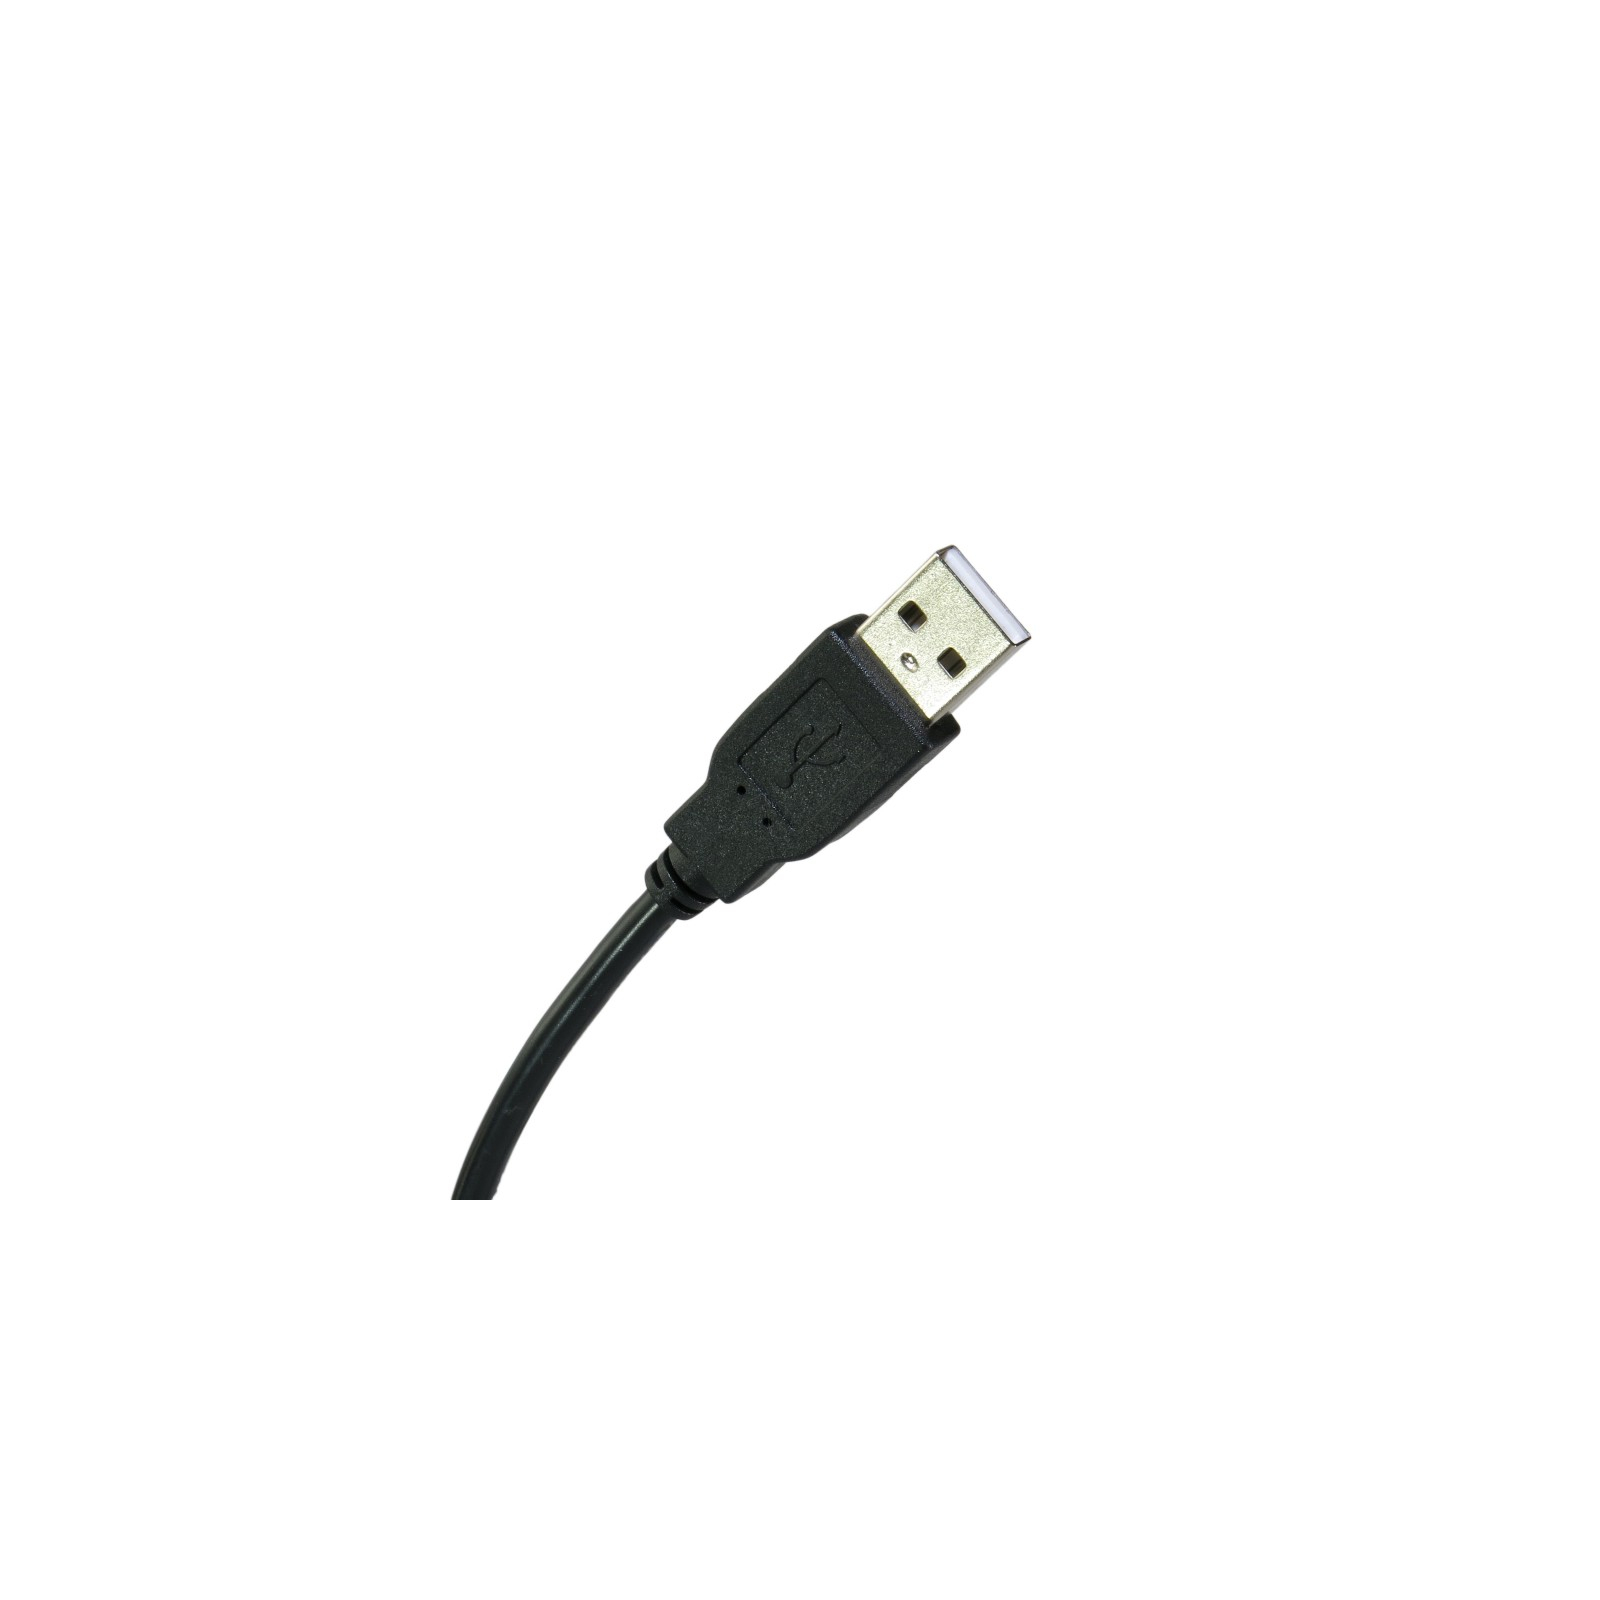 Дата кабель USB 2.0 AM to Mini 5P 0.5m Extradigital (KBU1627) зображення 2